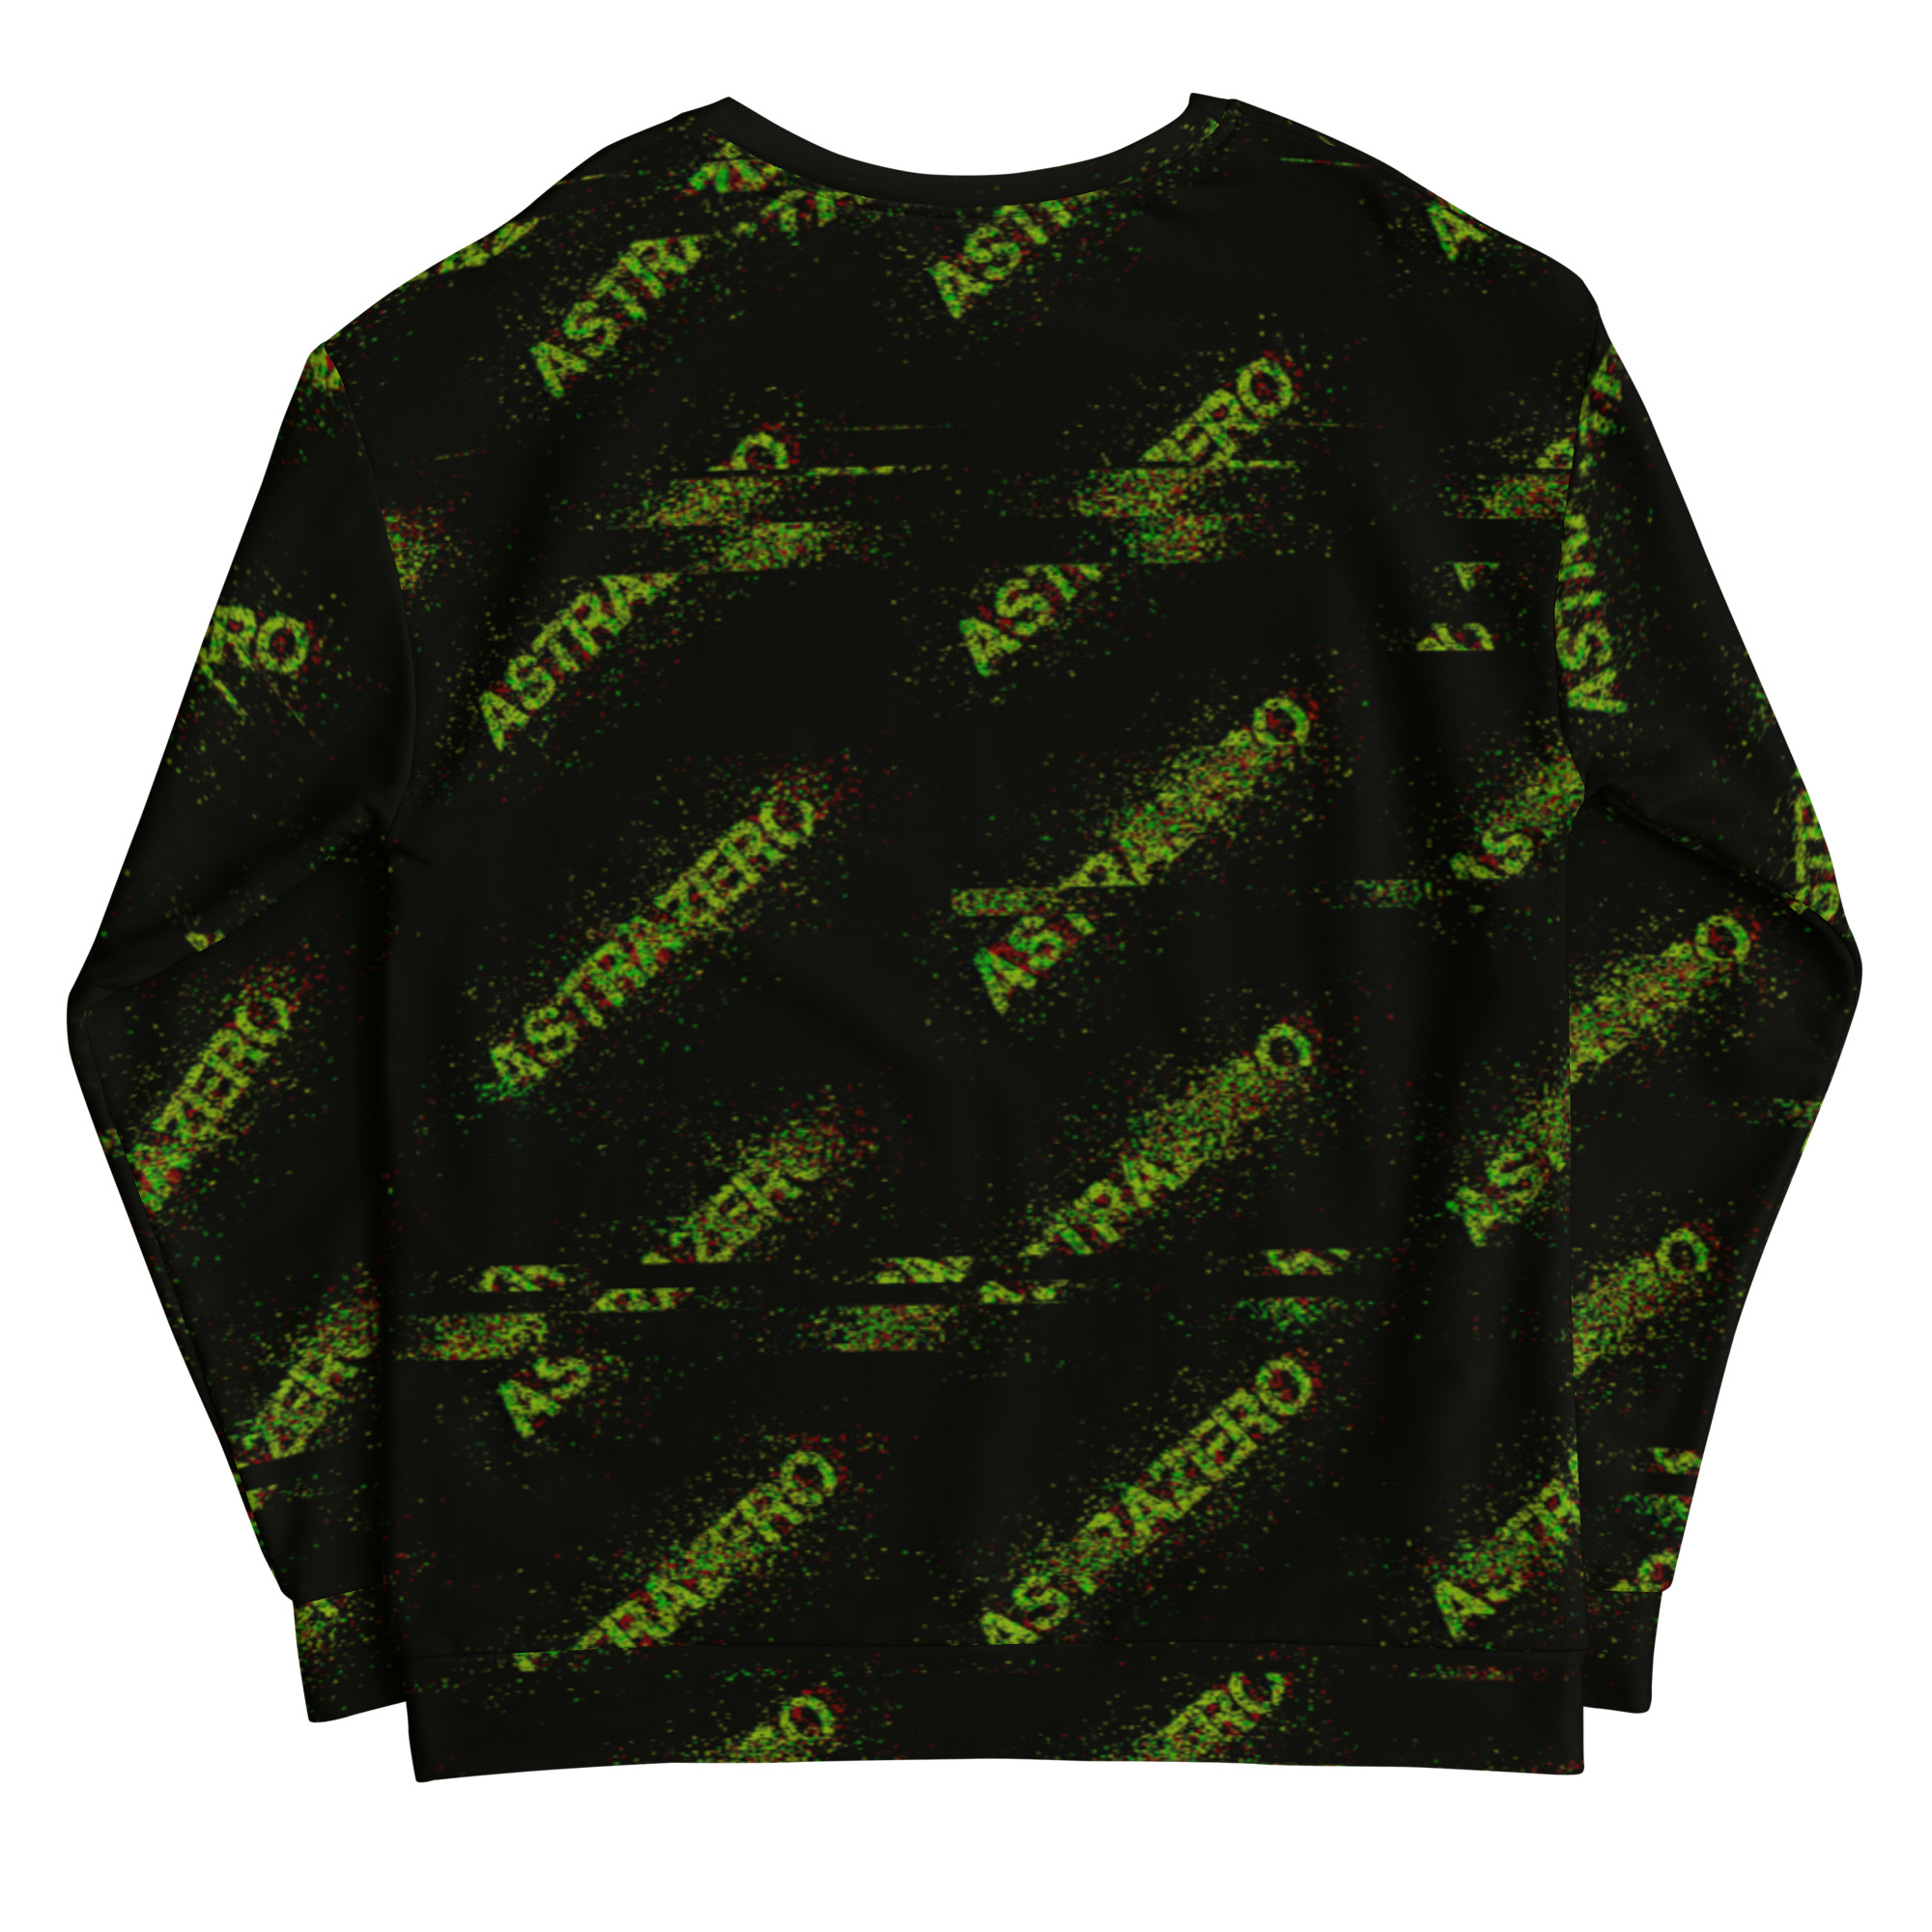 Featured image for “ASTRAZERO Glitch Green - Unisex Sweatshirt”